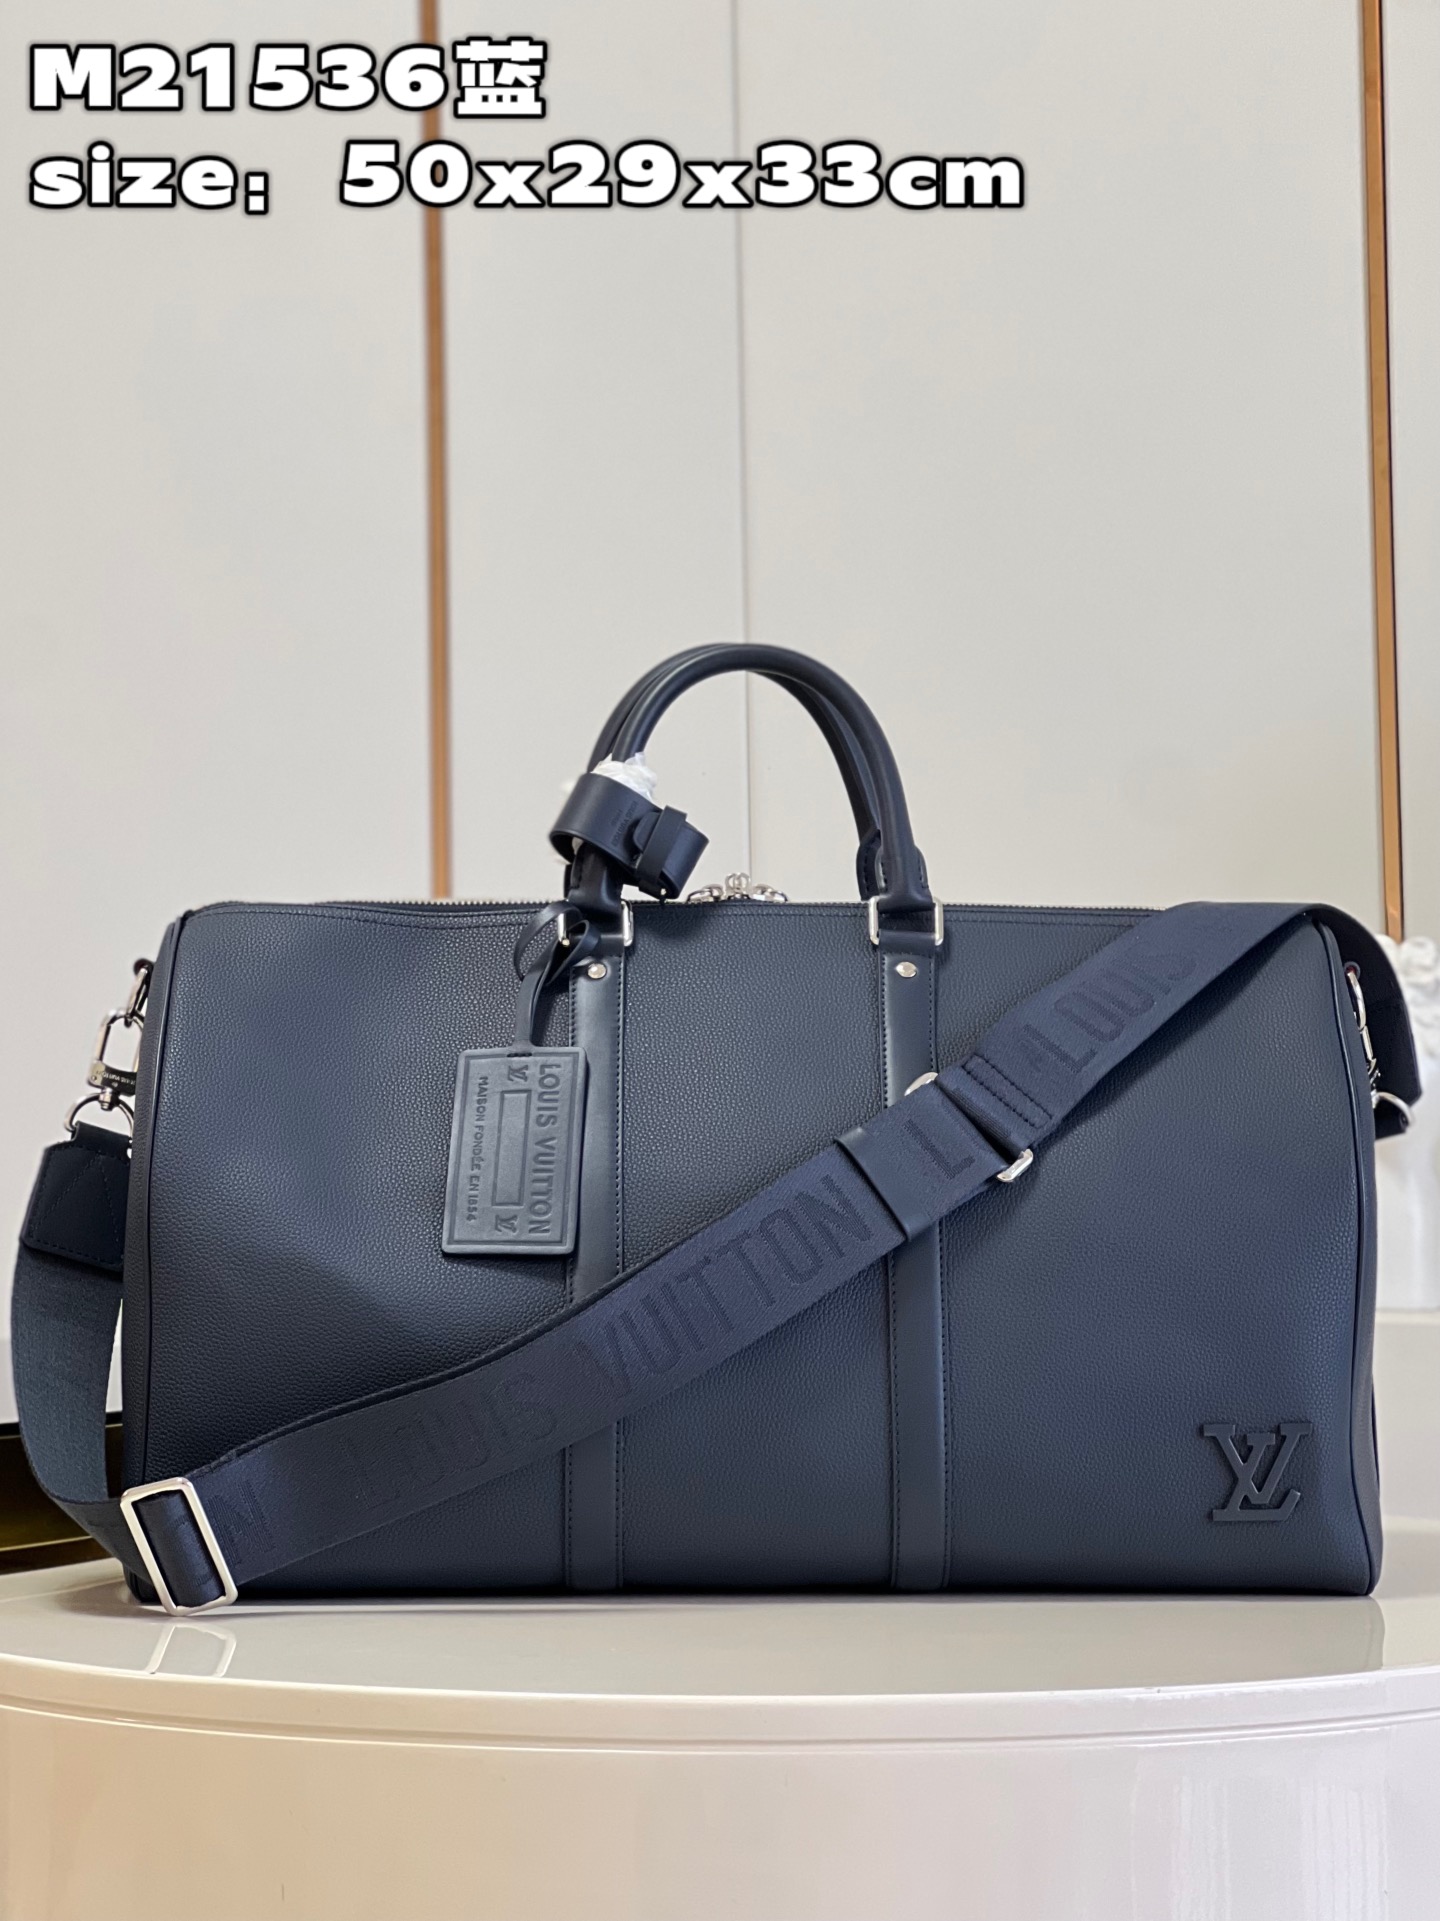 Louis Vuitton LV Keepall Travel Bags Blue Cowhide M21536